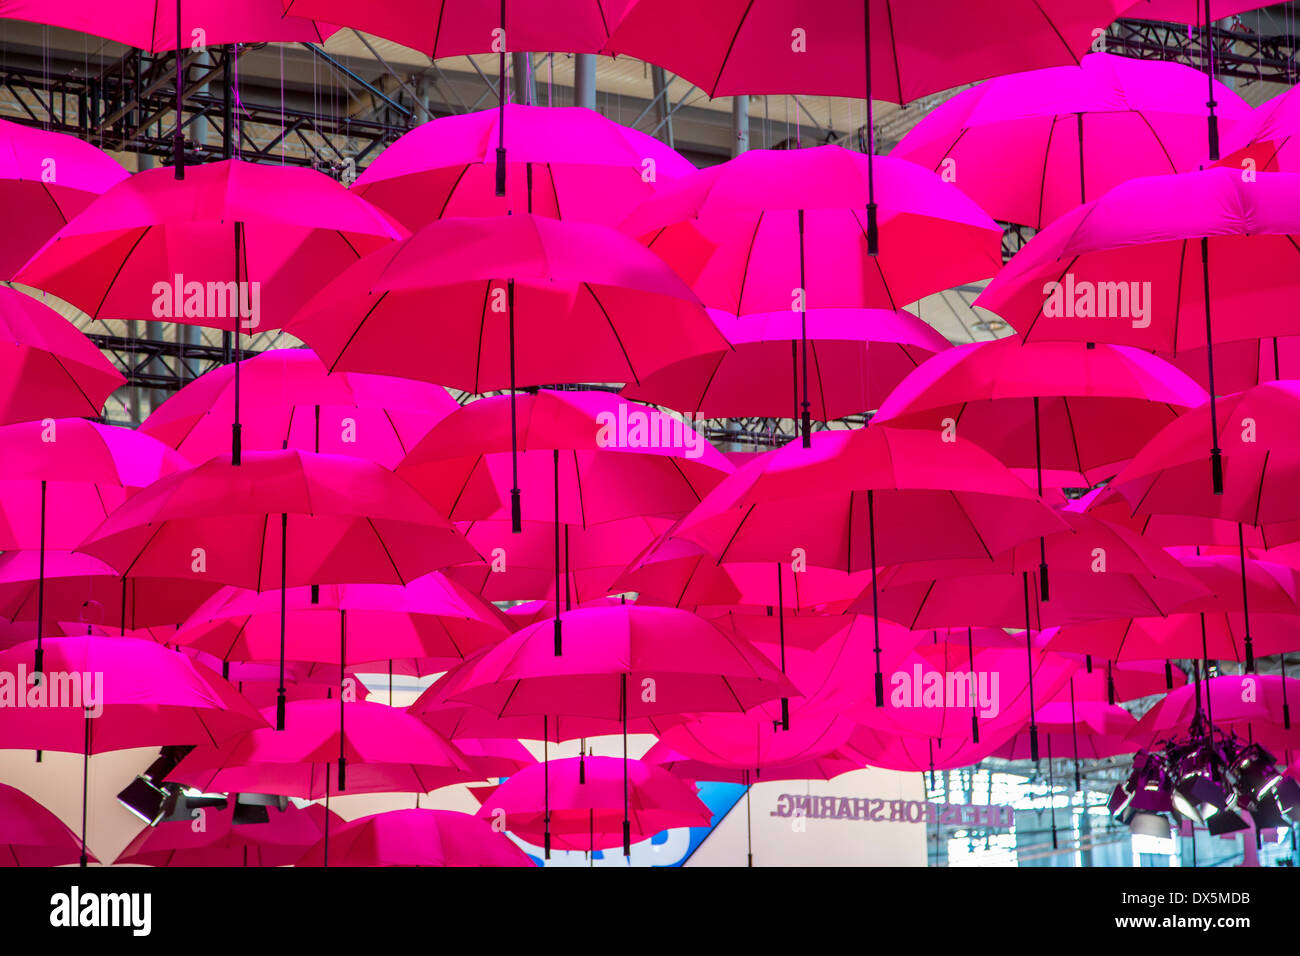 Ombrelli rosa immagini e fotografie stock ad alta risoluzione - Alamy